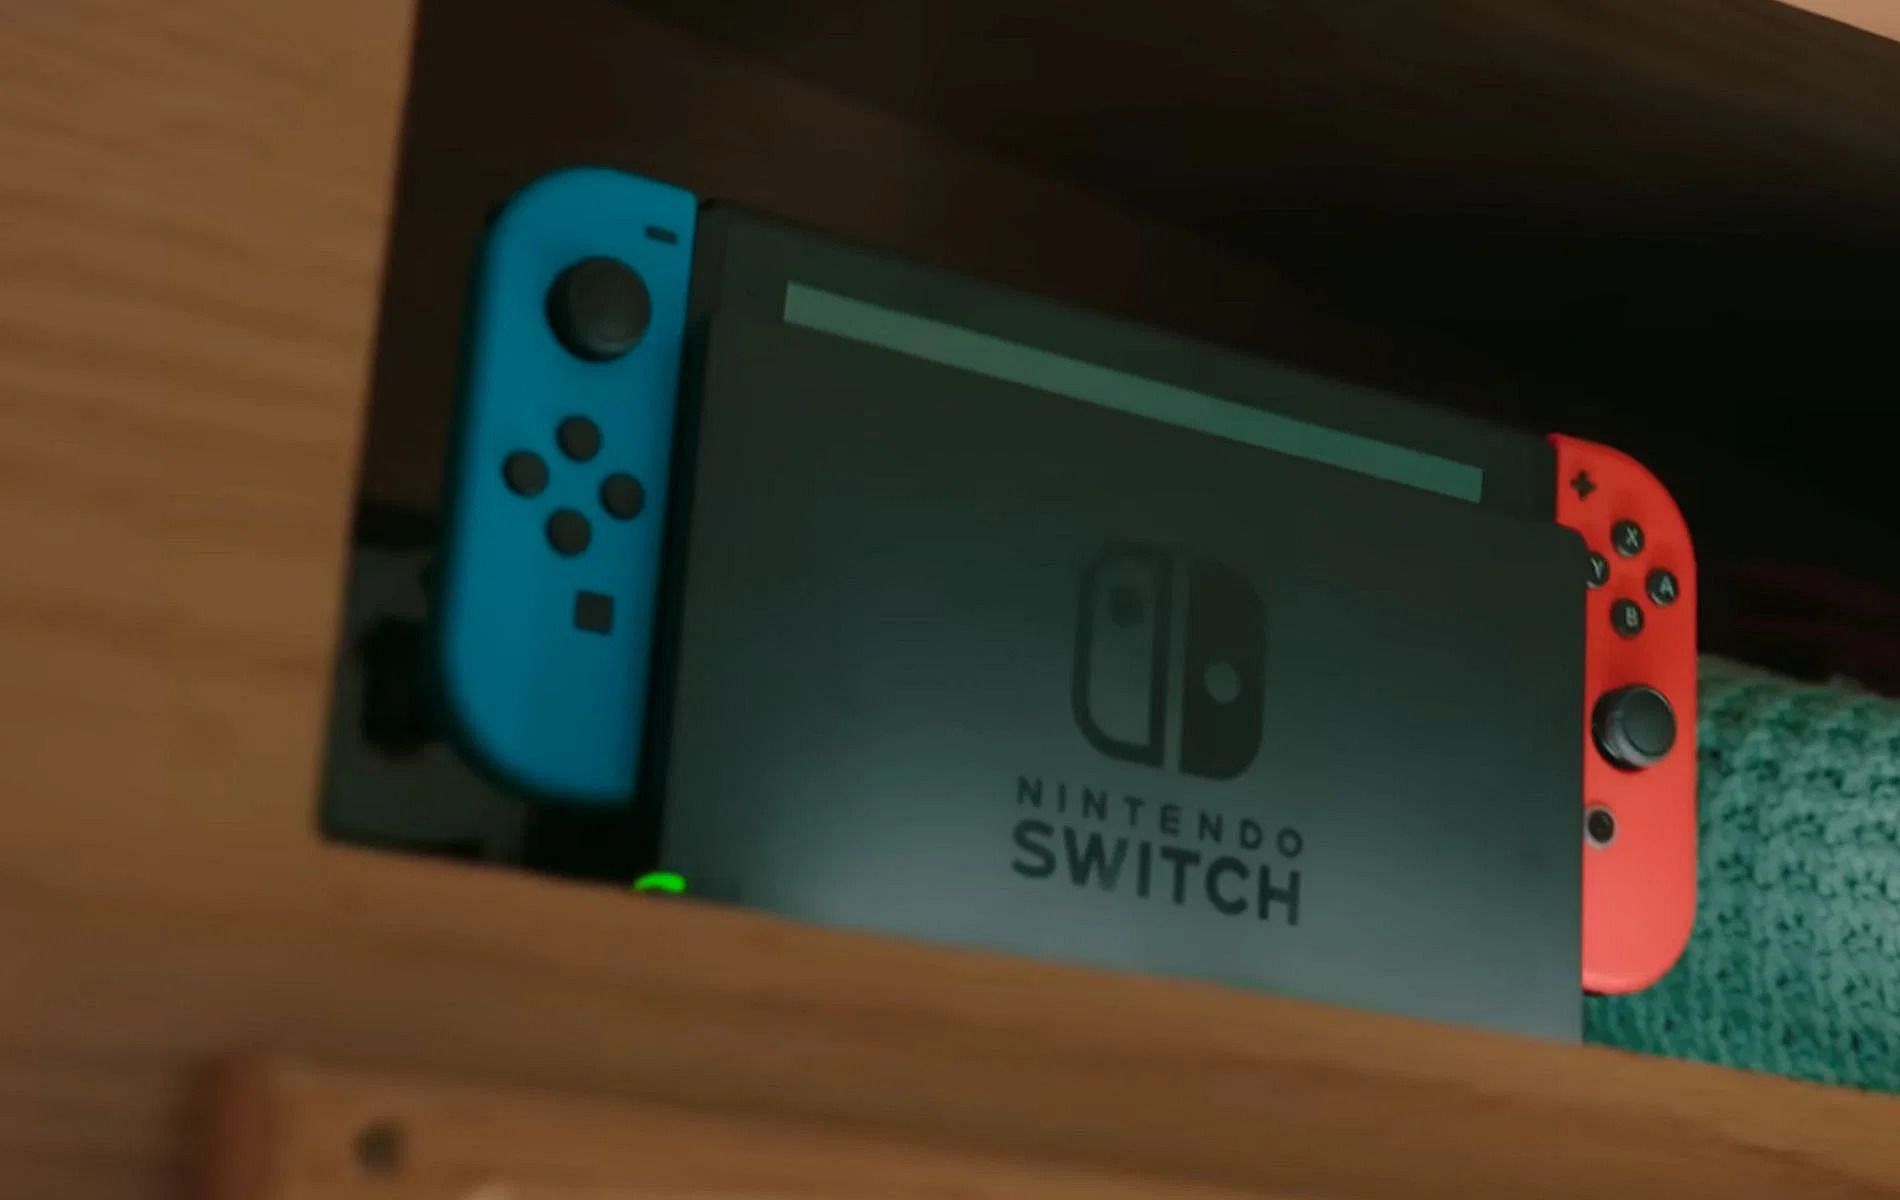 Nintendo switch 2 release date